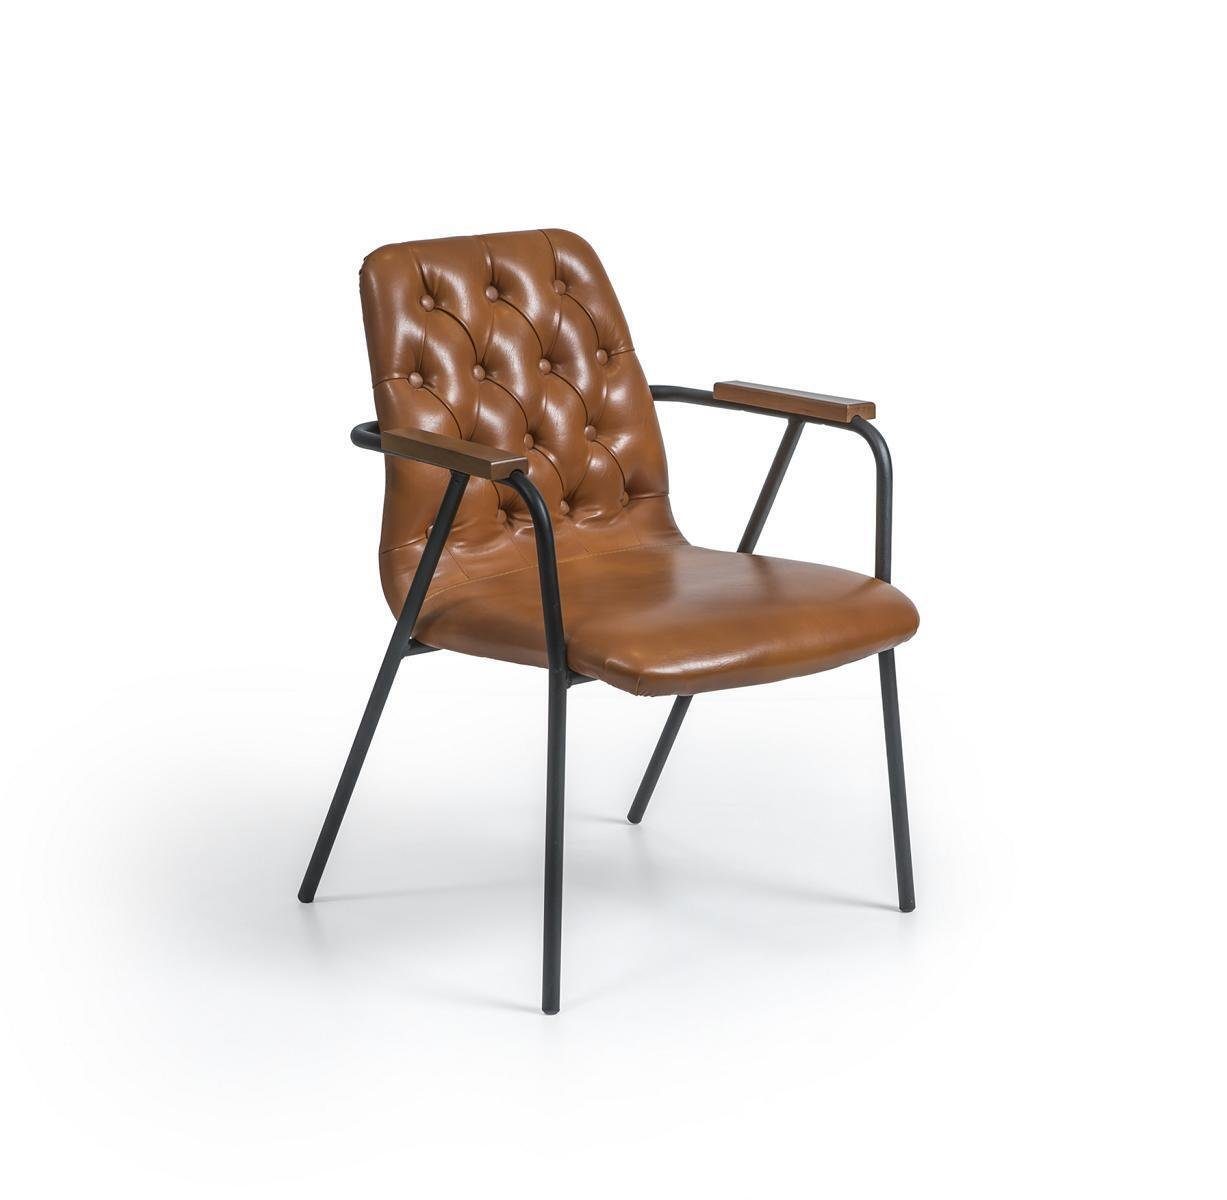 JVmoebel Armlehnstuhl Designer Stuhl Möbel mit Armlehnen Esszimmerstuhl Luxus Braun in Europa Neu, Made